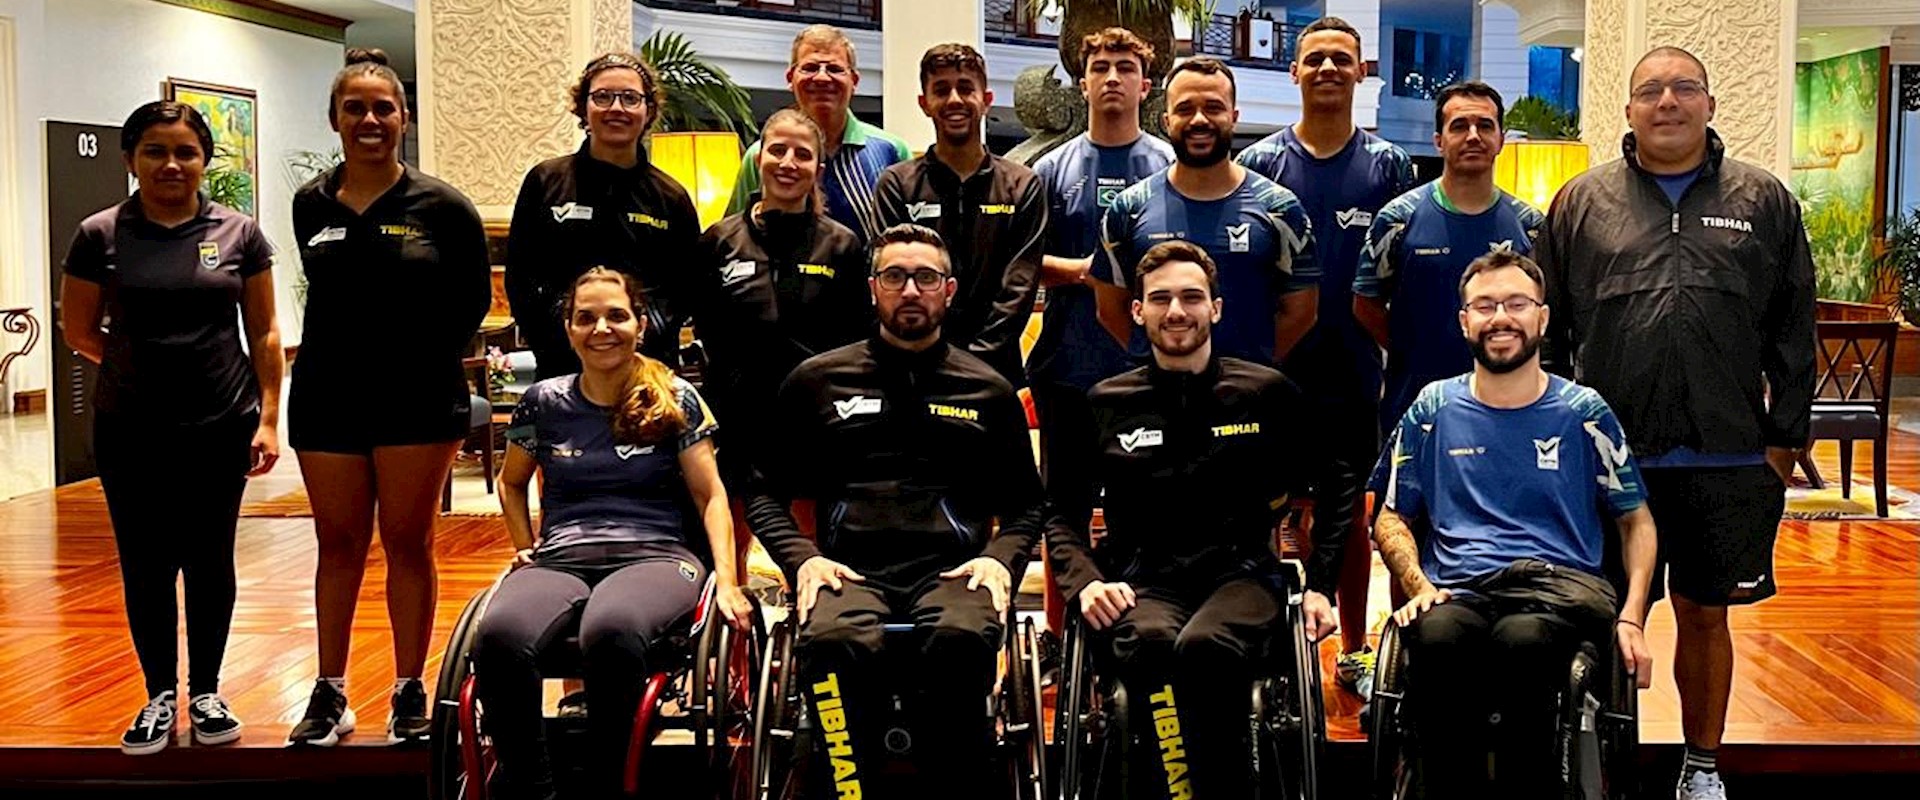 De olho nas vagas para Paris, delegação brasileira chega a Pattaya, na Tailândia, para a seletiva paralímpica 